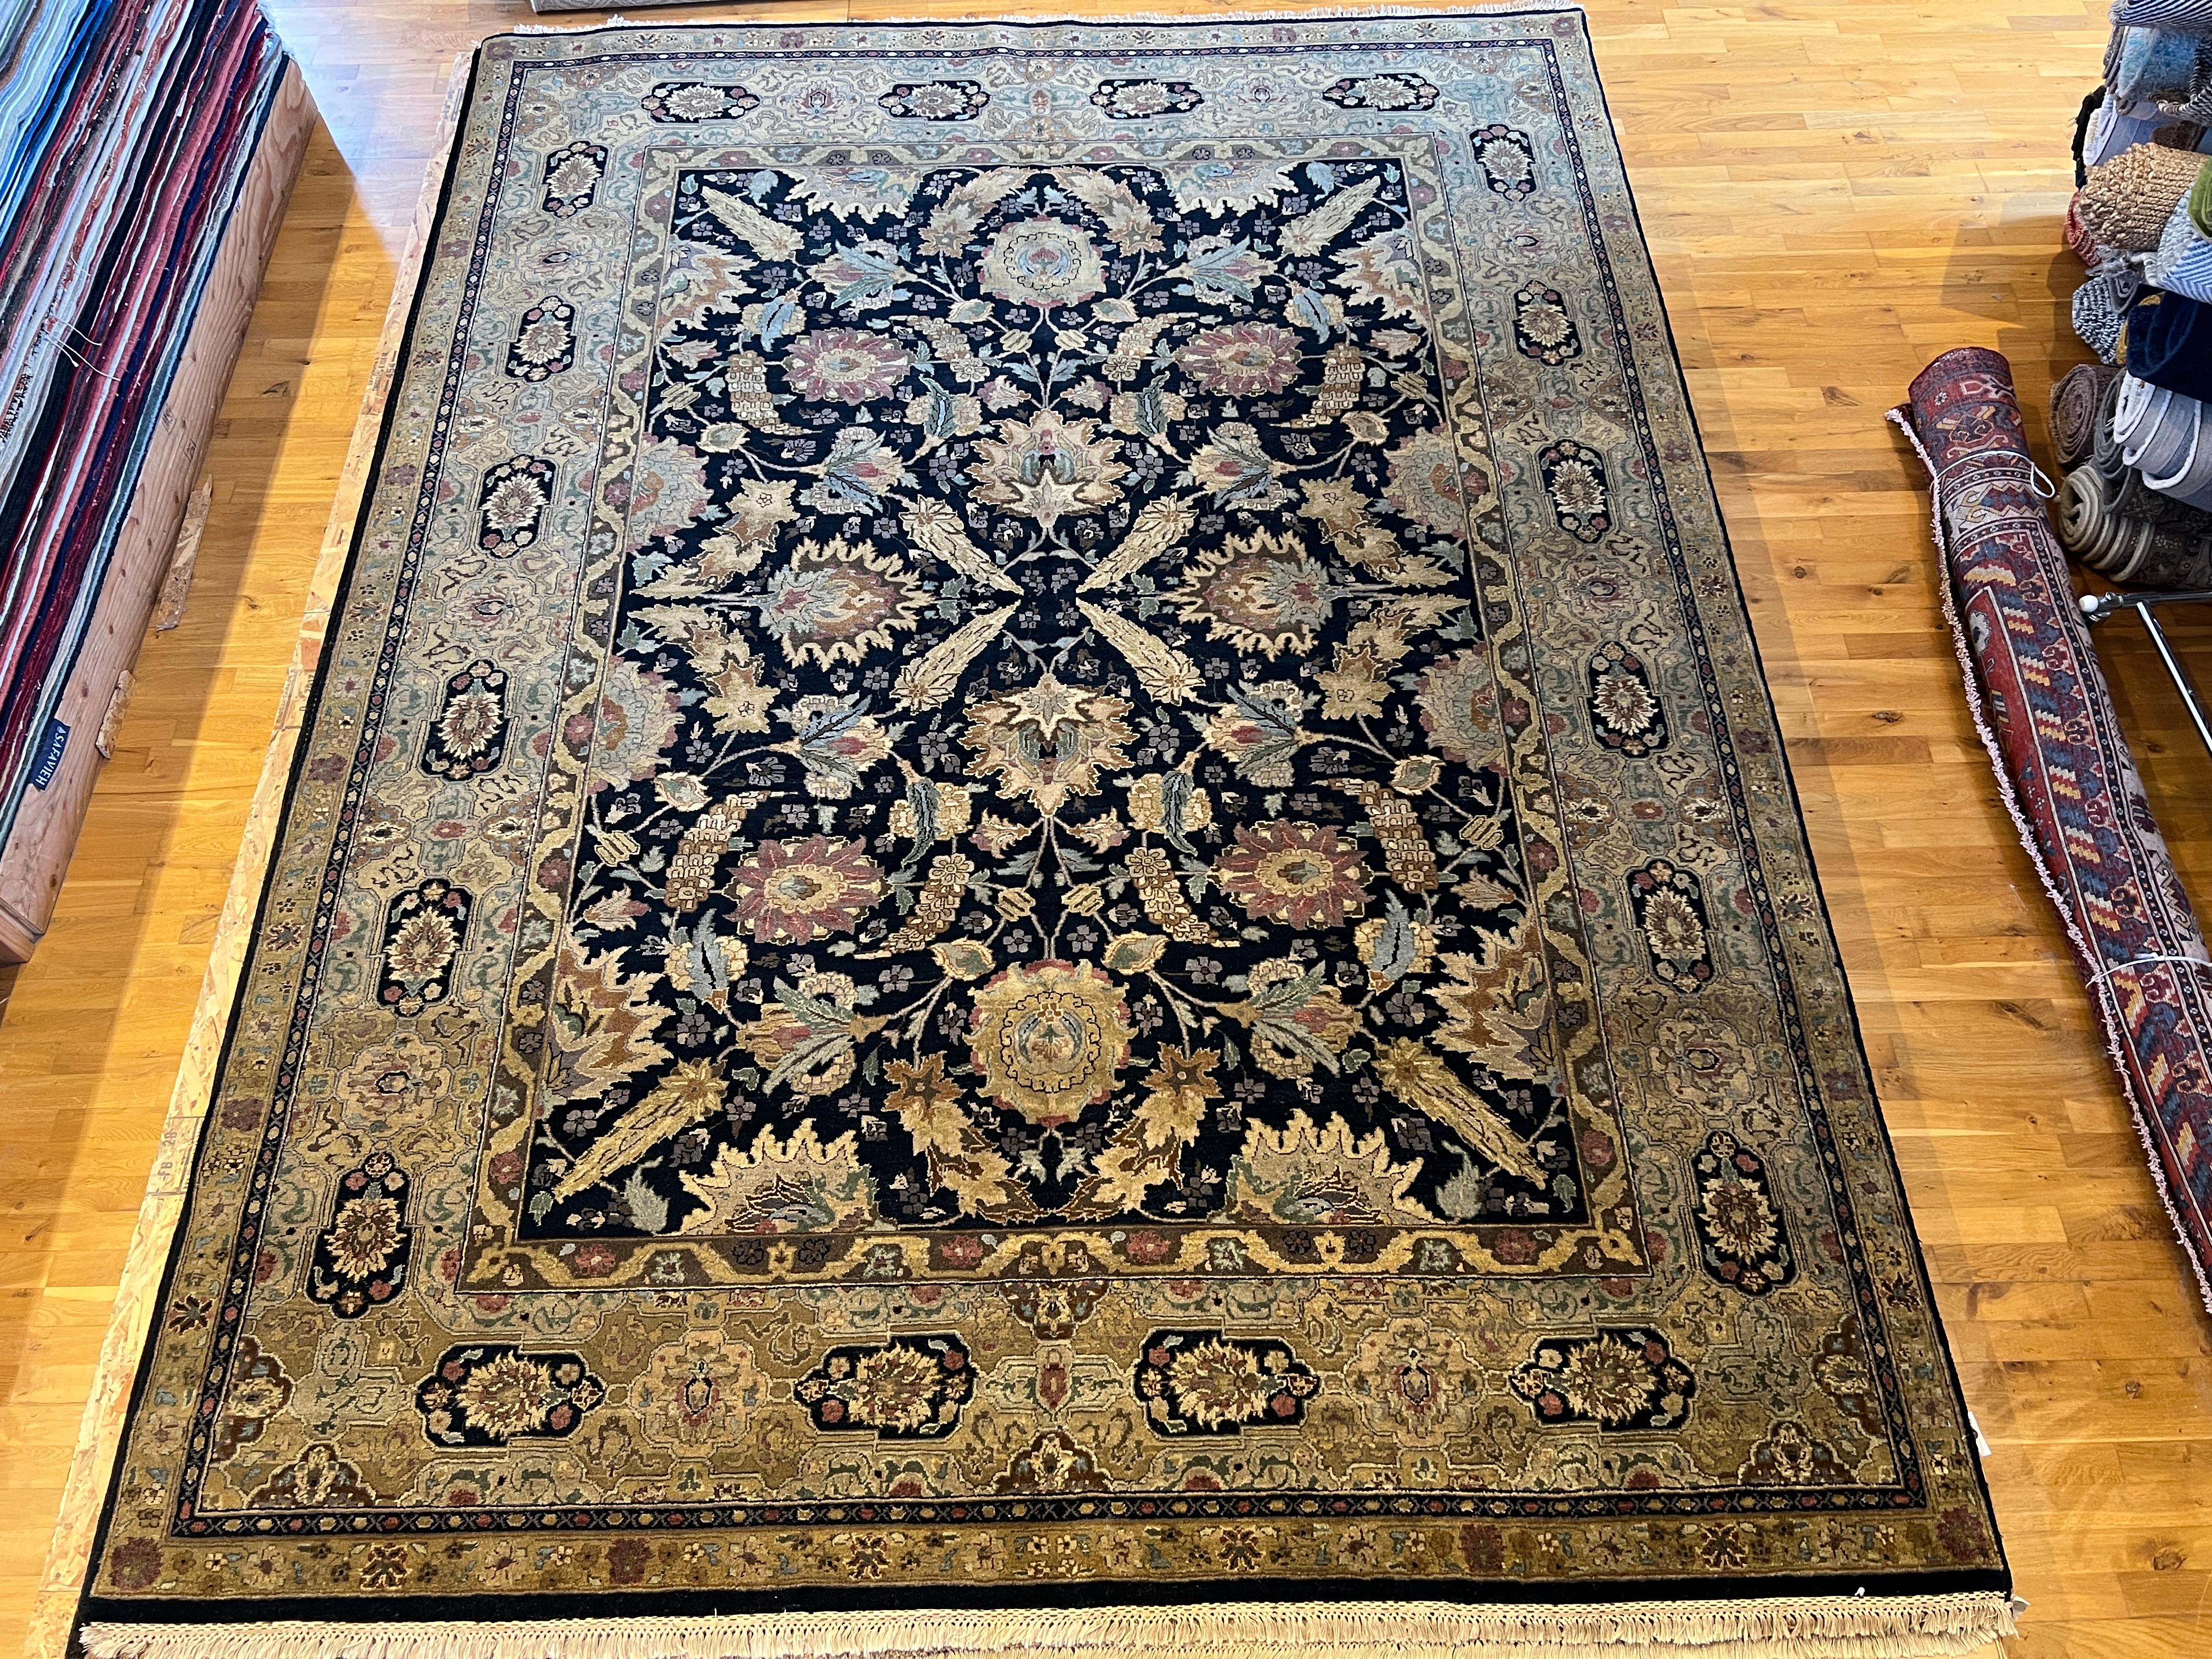 Voici notre magnifique tapis persan 9'x12', noué à la main en Inde avec de la laine et des teintures naturelles. Doté d'un champ noir modernisé et d'une bordure ivoire, ce tapis ajoutera une touche d'élégance et de sophistication à n'importe quelle